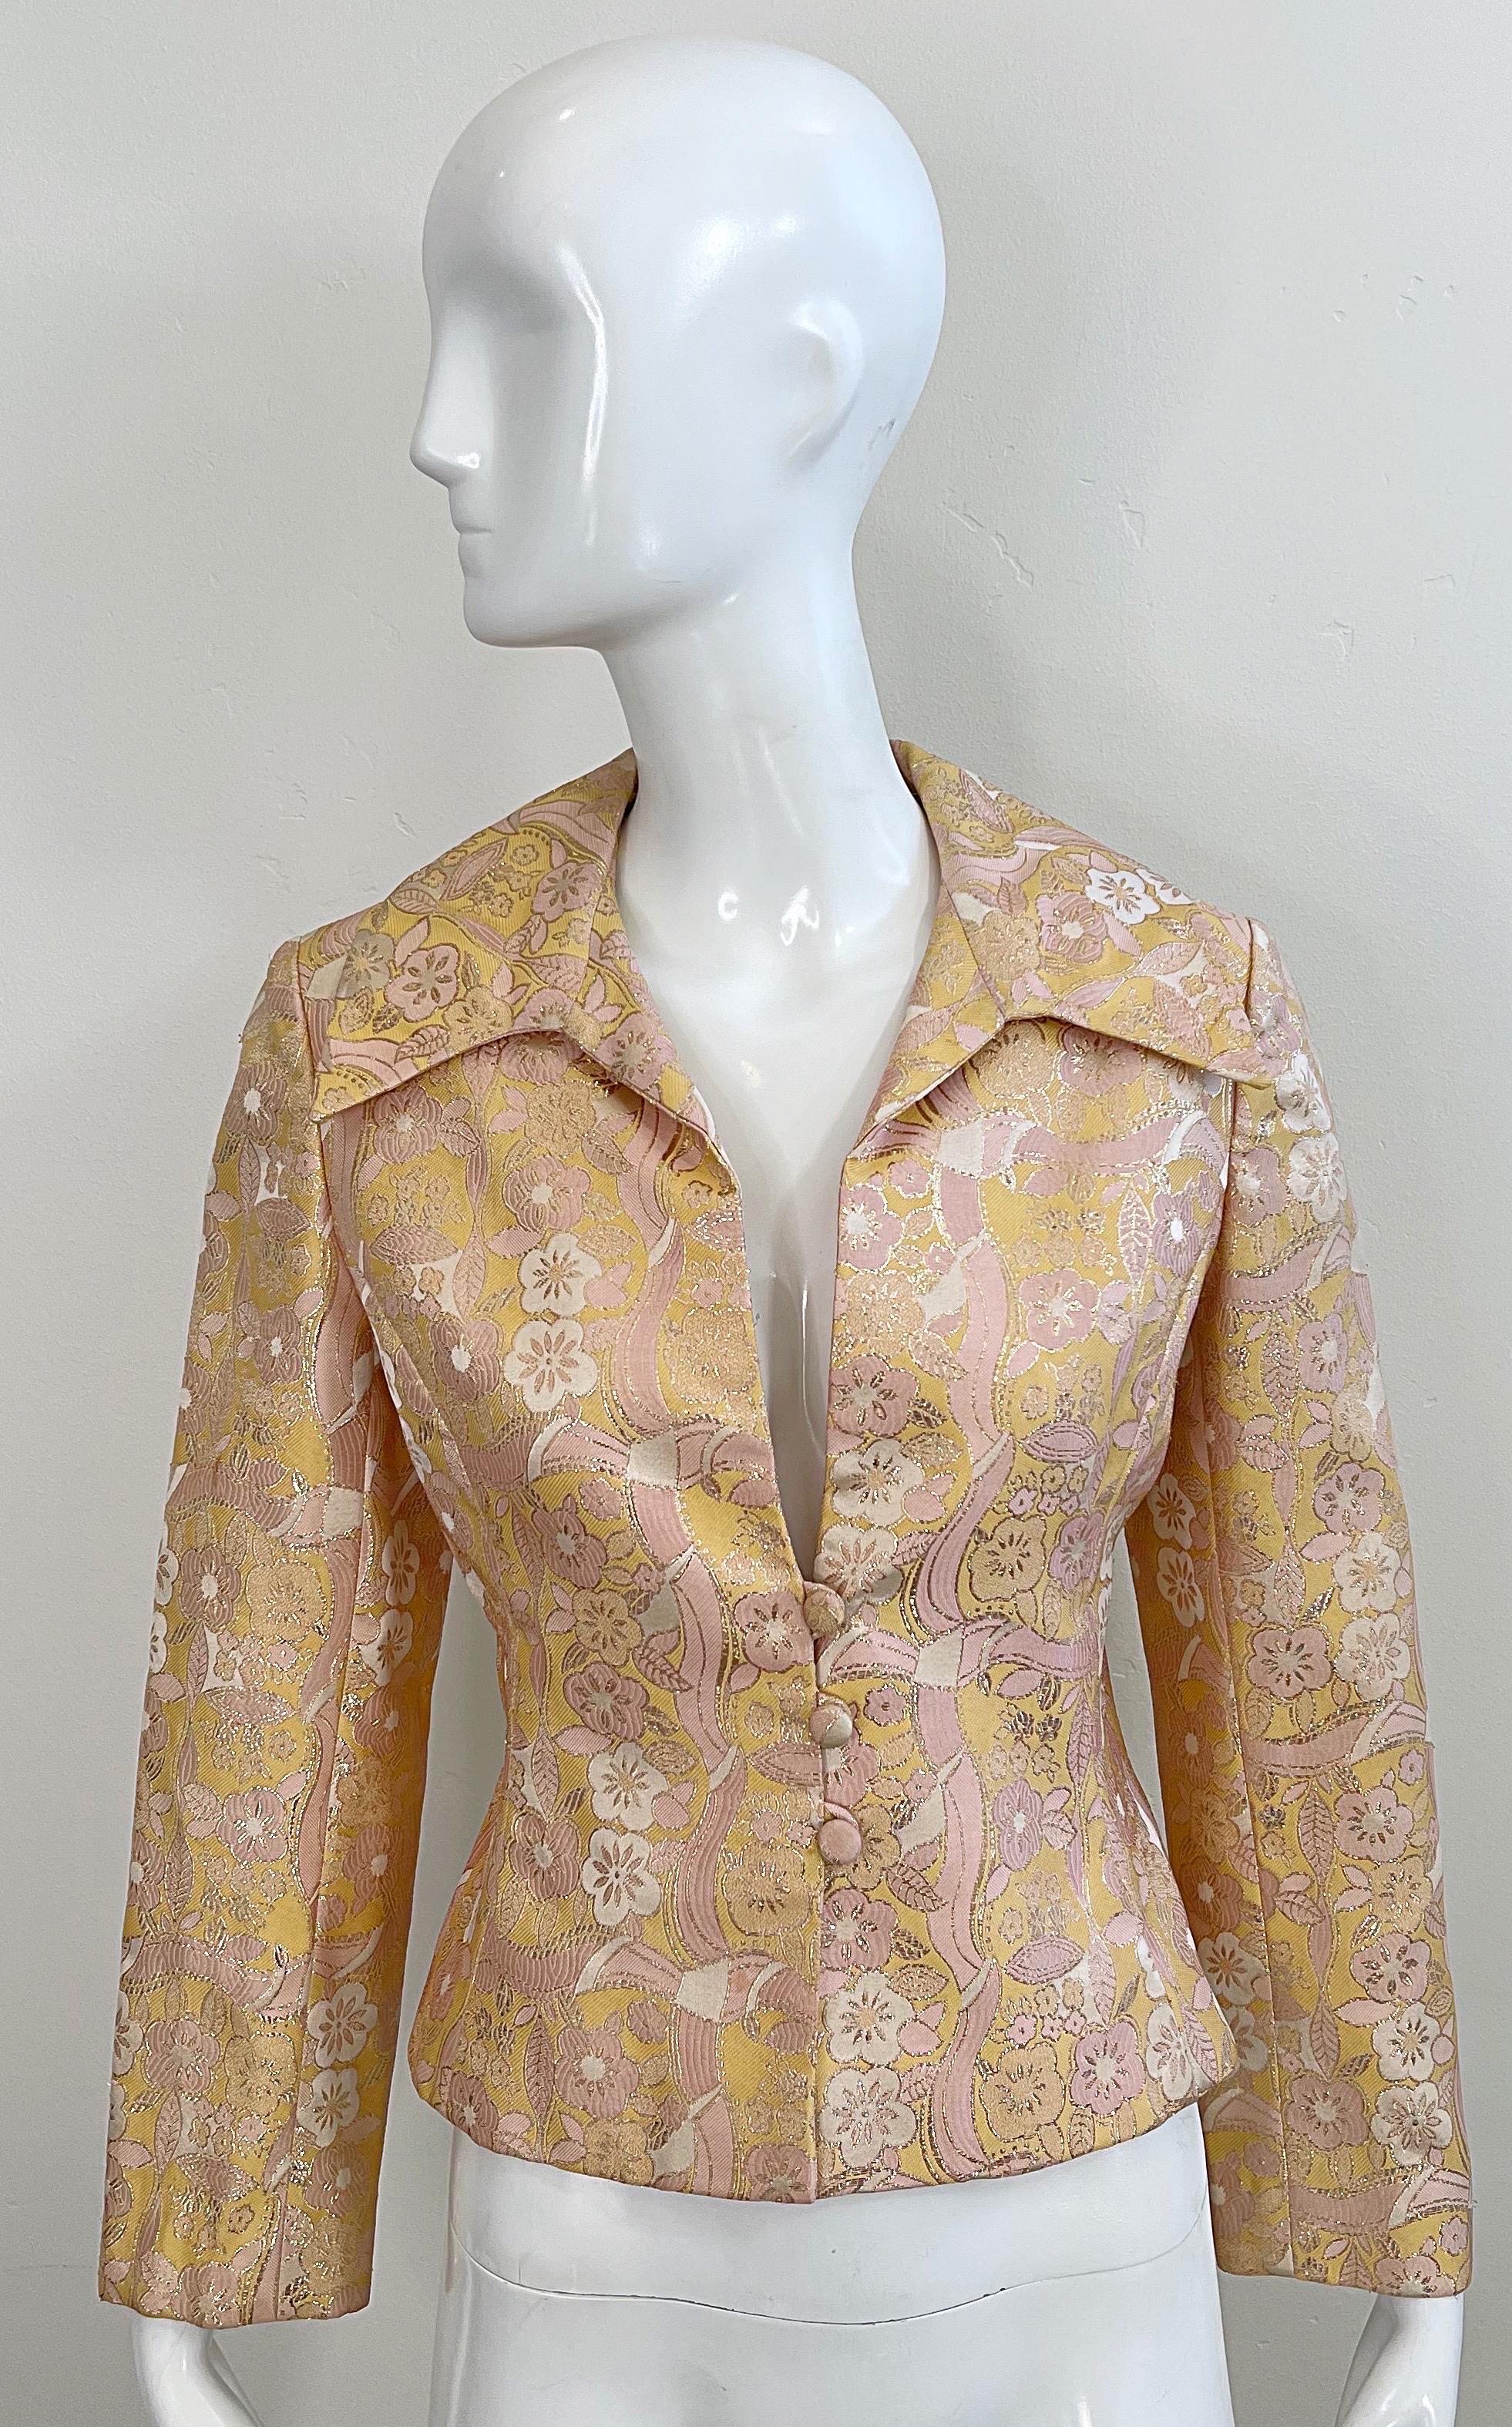 Veste ou blouse MOLLIE PARNIS en brocart de soie pêche, rose, ivoire et or du début des années 1970 ! Revers exagérés et trois boutons recouverts de tissu sur le devant. Imprimé de fleurs métalliques sur toute la surface. Parfaite superposée à une